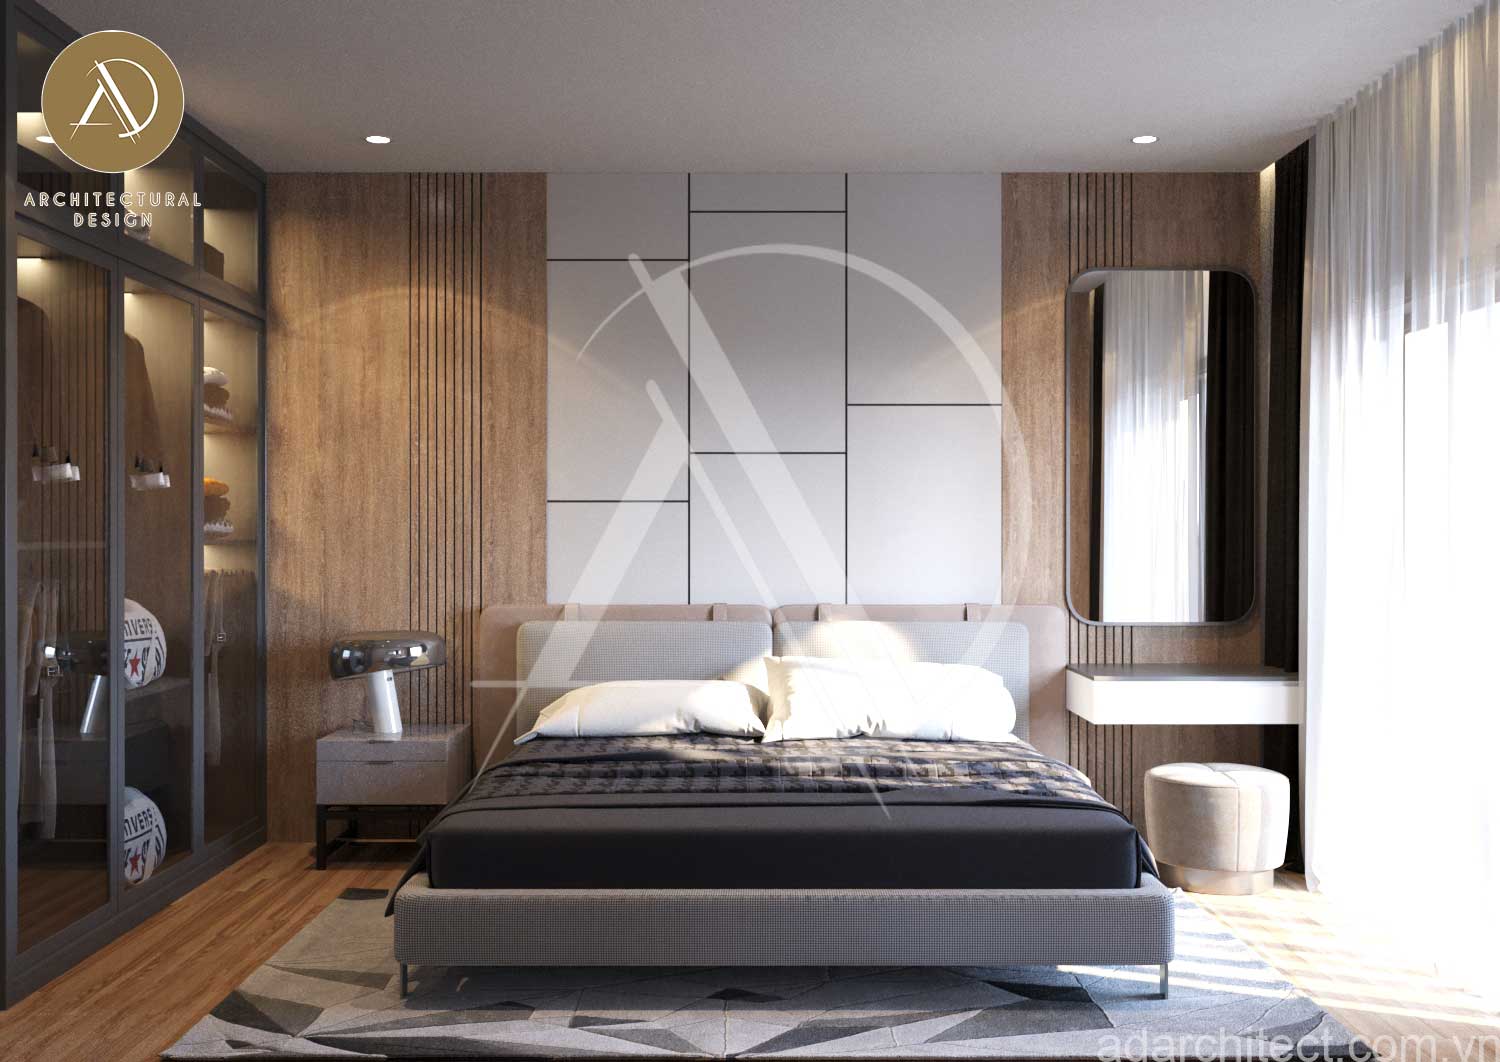 Phòng ngủ không quá cầu kì nhưng vẫn độc đáo khi tường được trang trí vân gỗ tinh tế